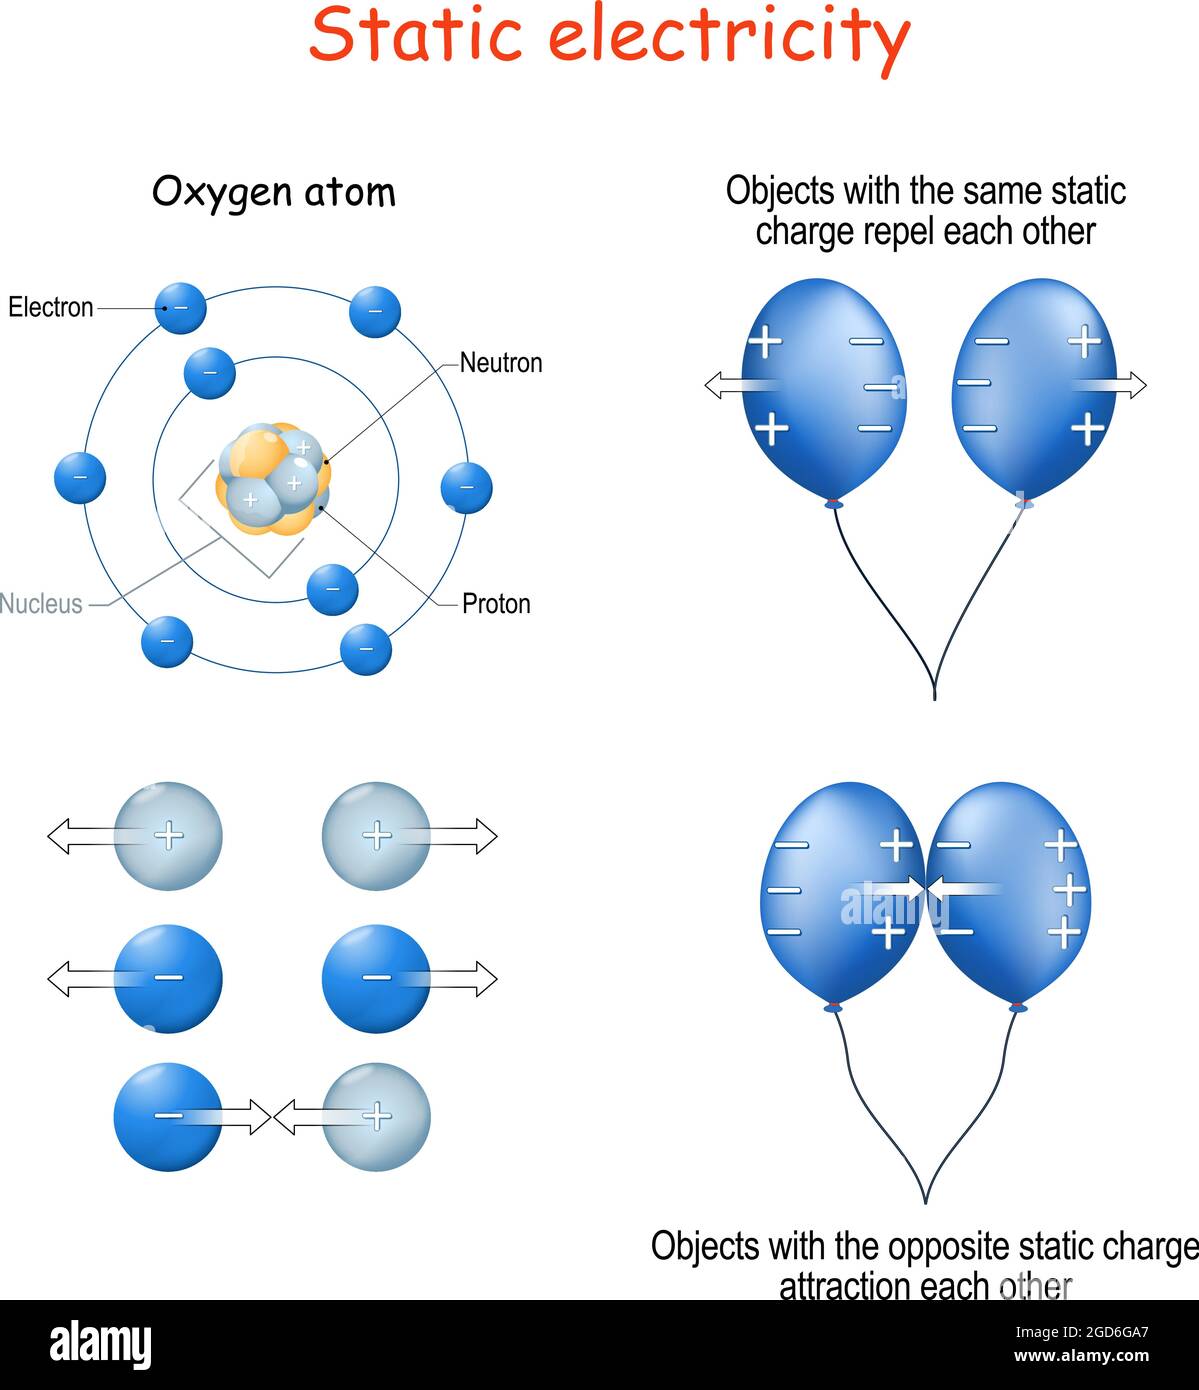 L'électricité statique, par exemple deux ballons bleus, la structure de l'atome d'oxygène ou les protons et électrons Illustration de Vecteur